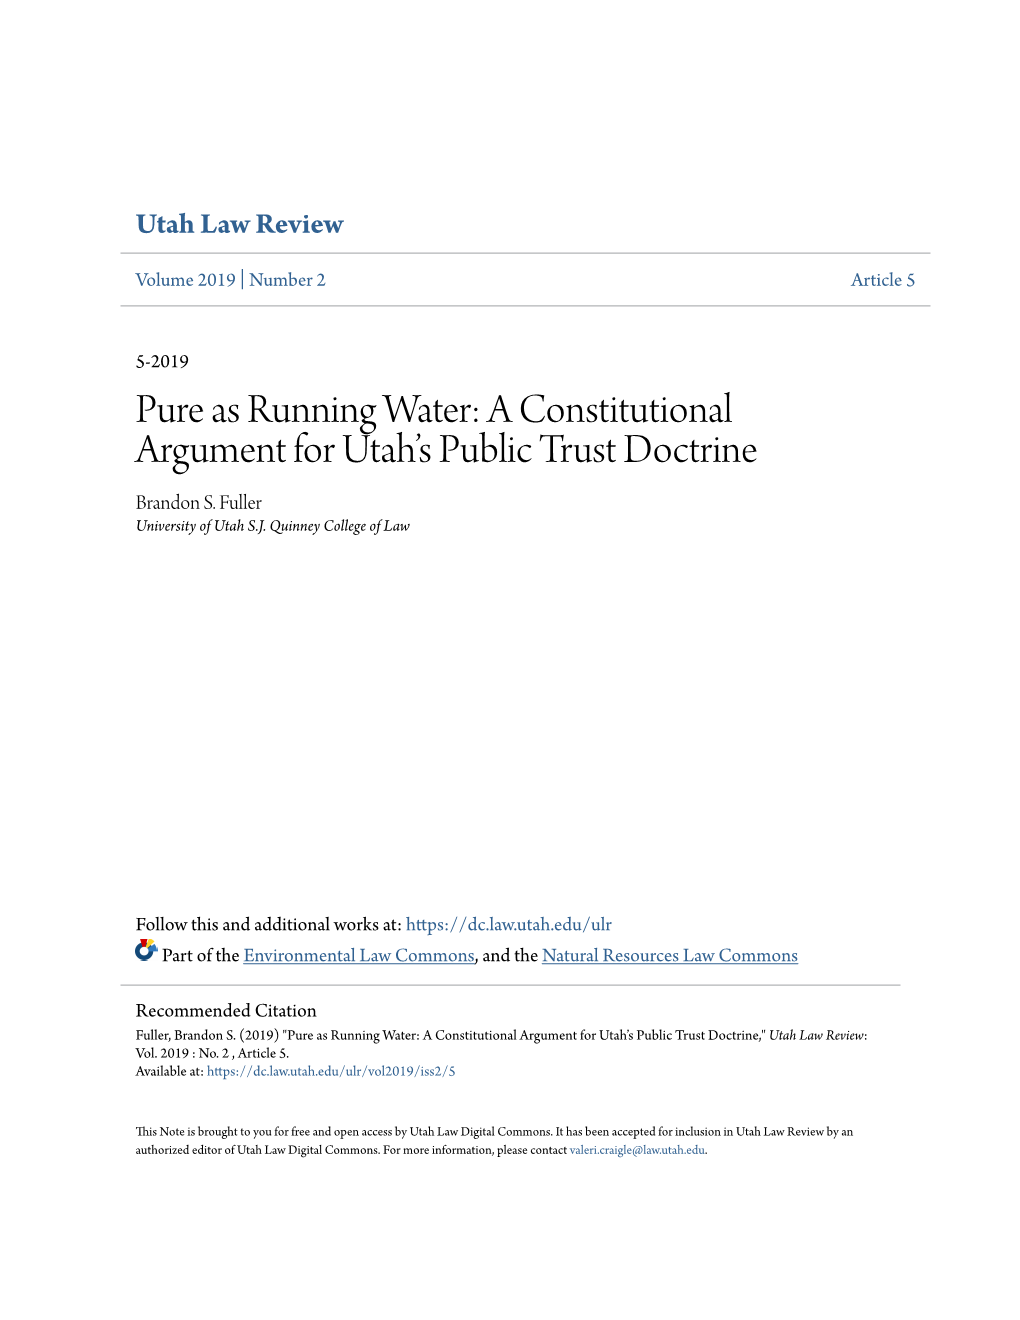 A Constitutional Argument for Utah's Public Trust Doctrine